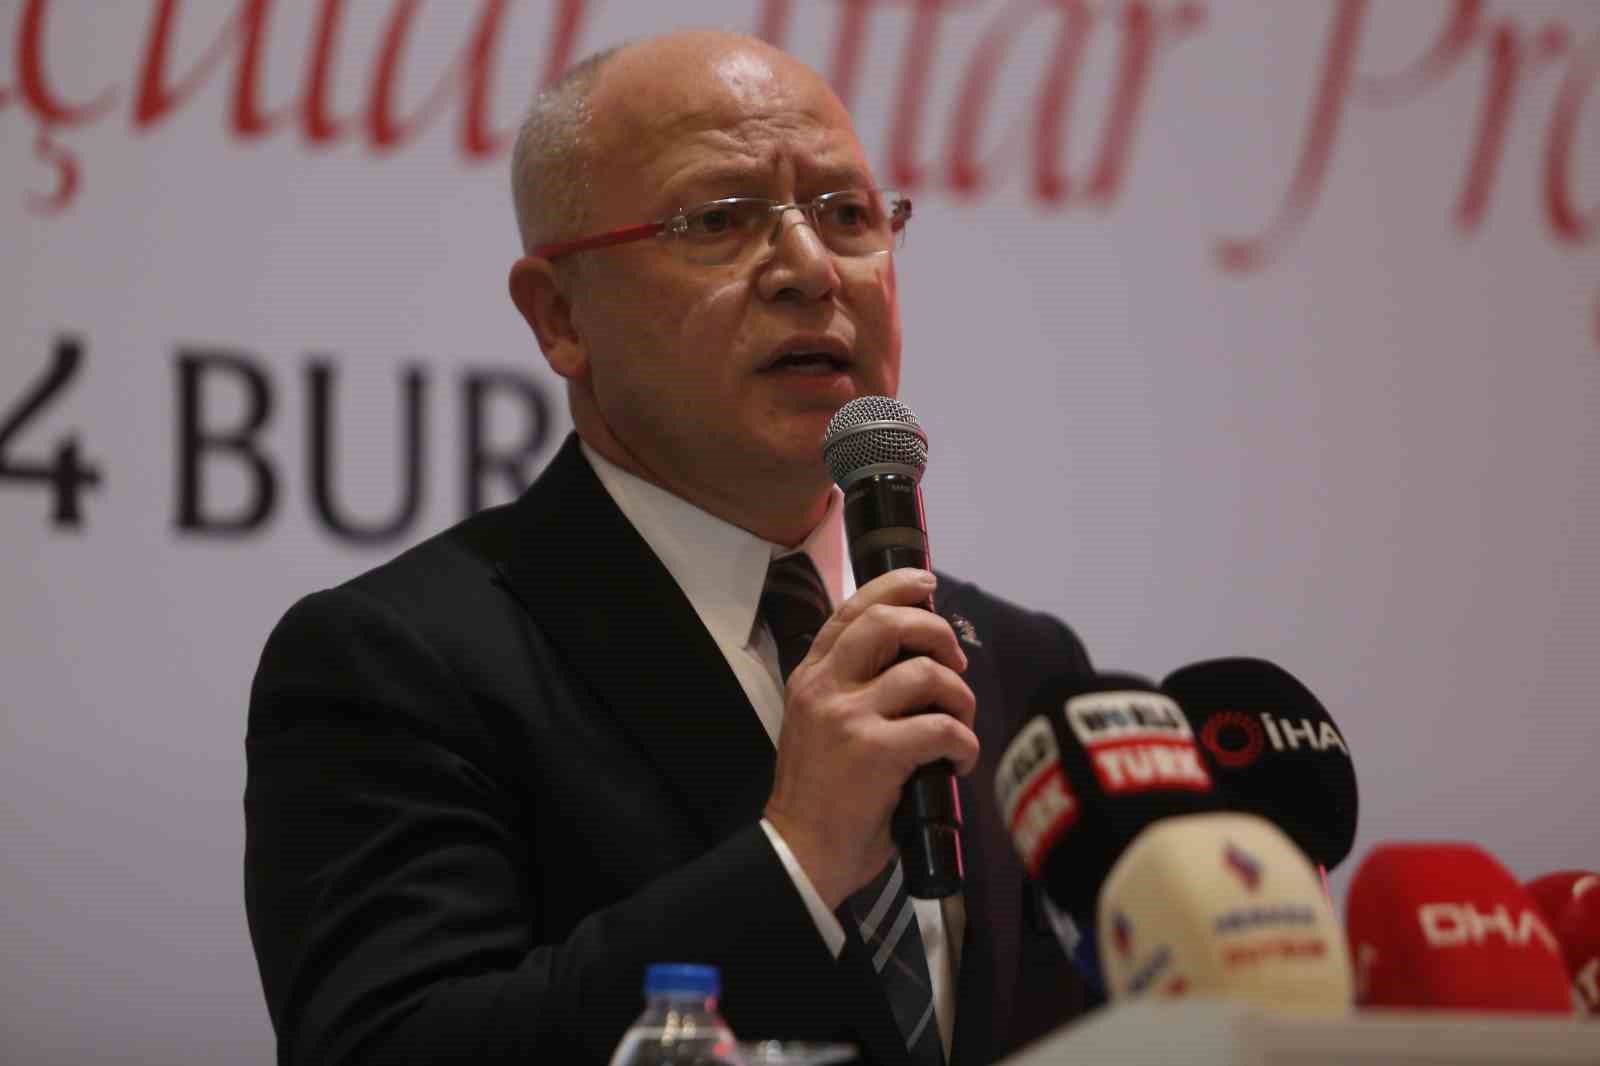 Mustafa Şentop: “Millet İttifakı Recep Tayyip Erdoğan gitsin üzerine kuruluydu”